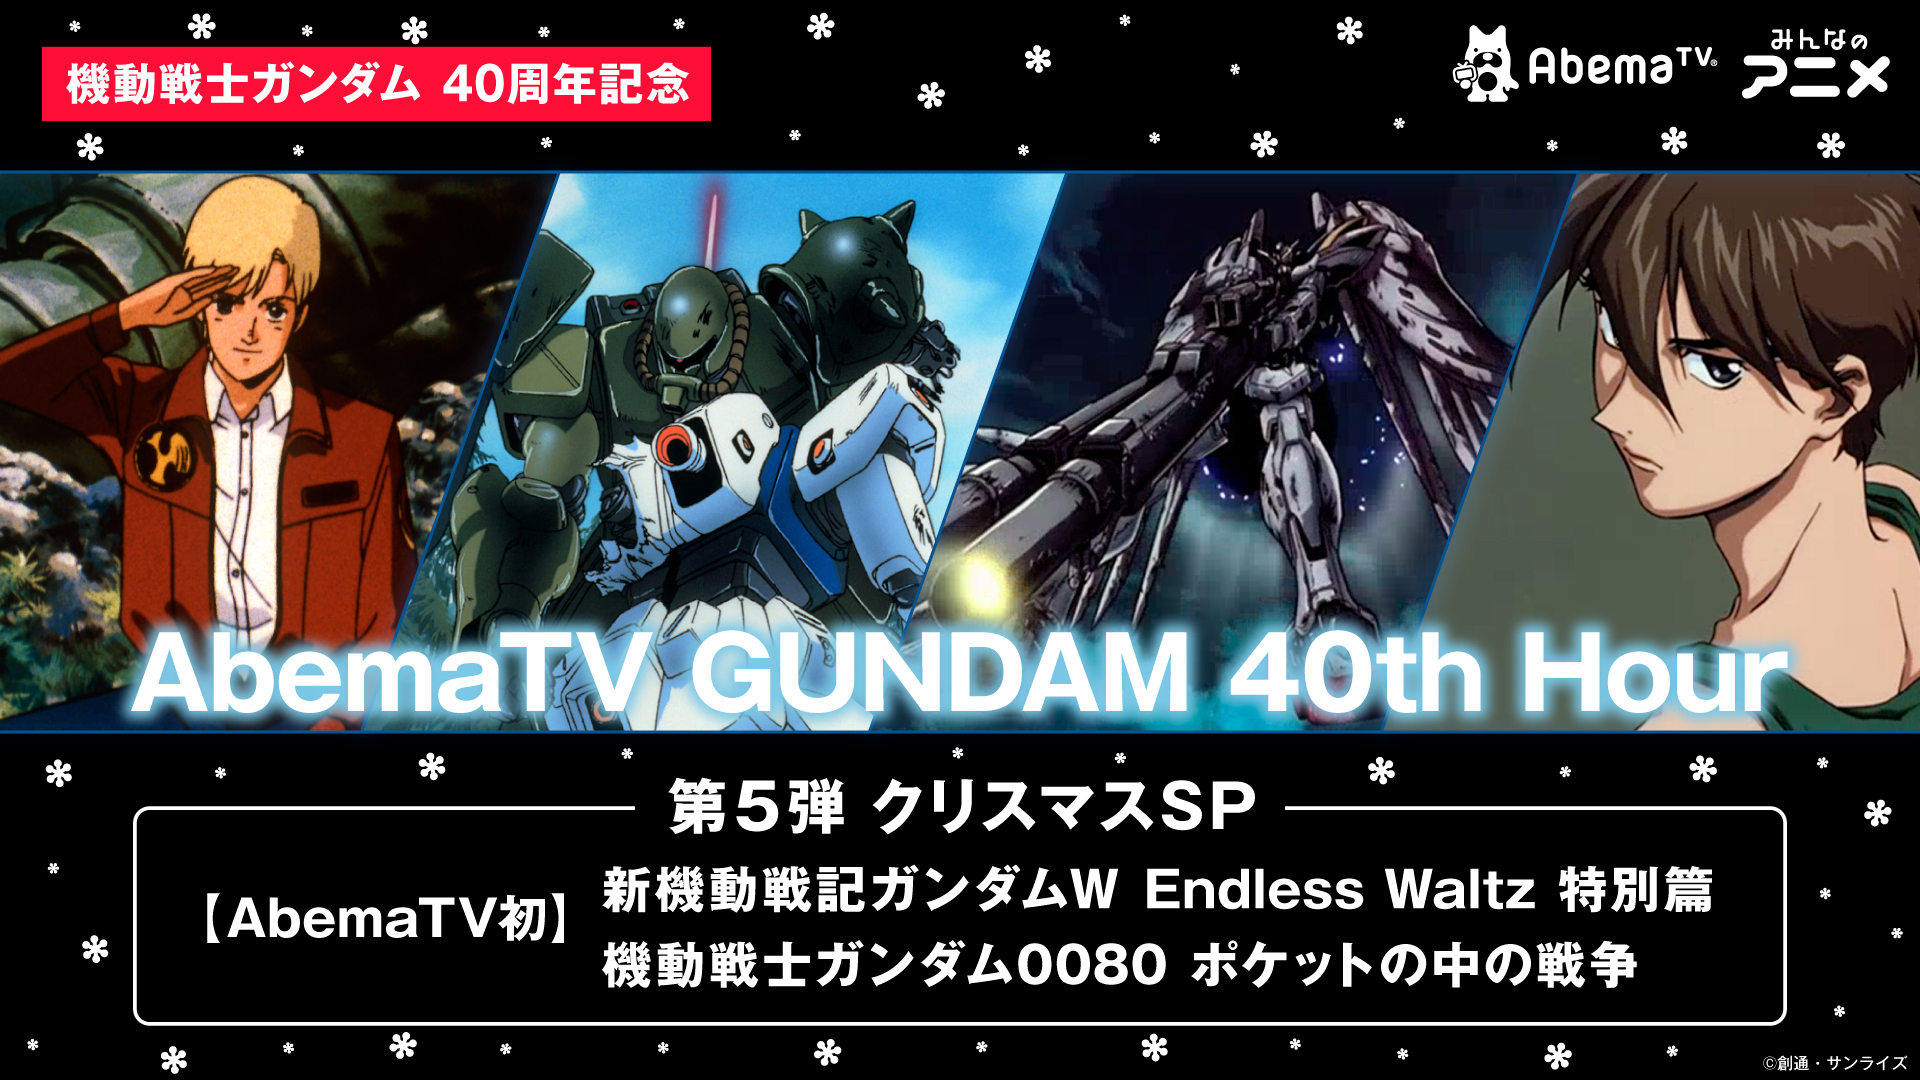 Abematv Gundam 40th Hour 第5弾発表 アキバ総研